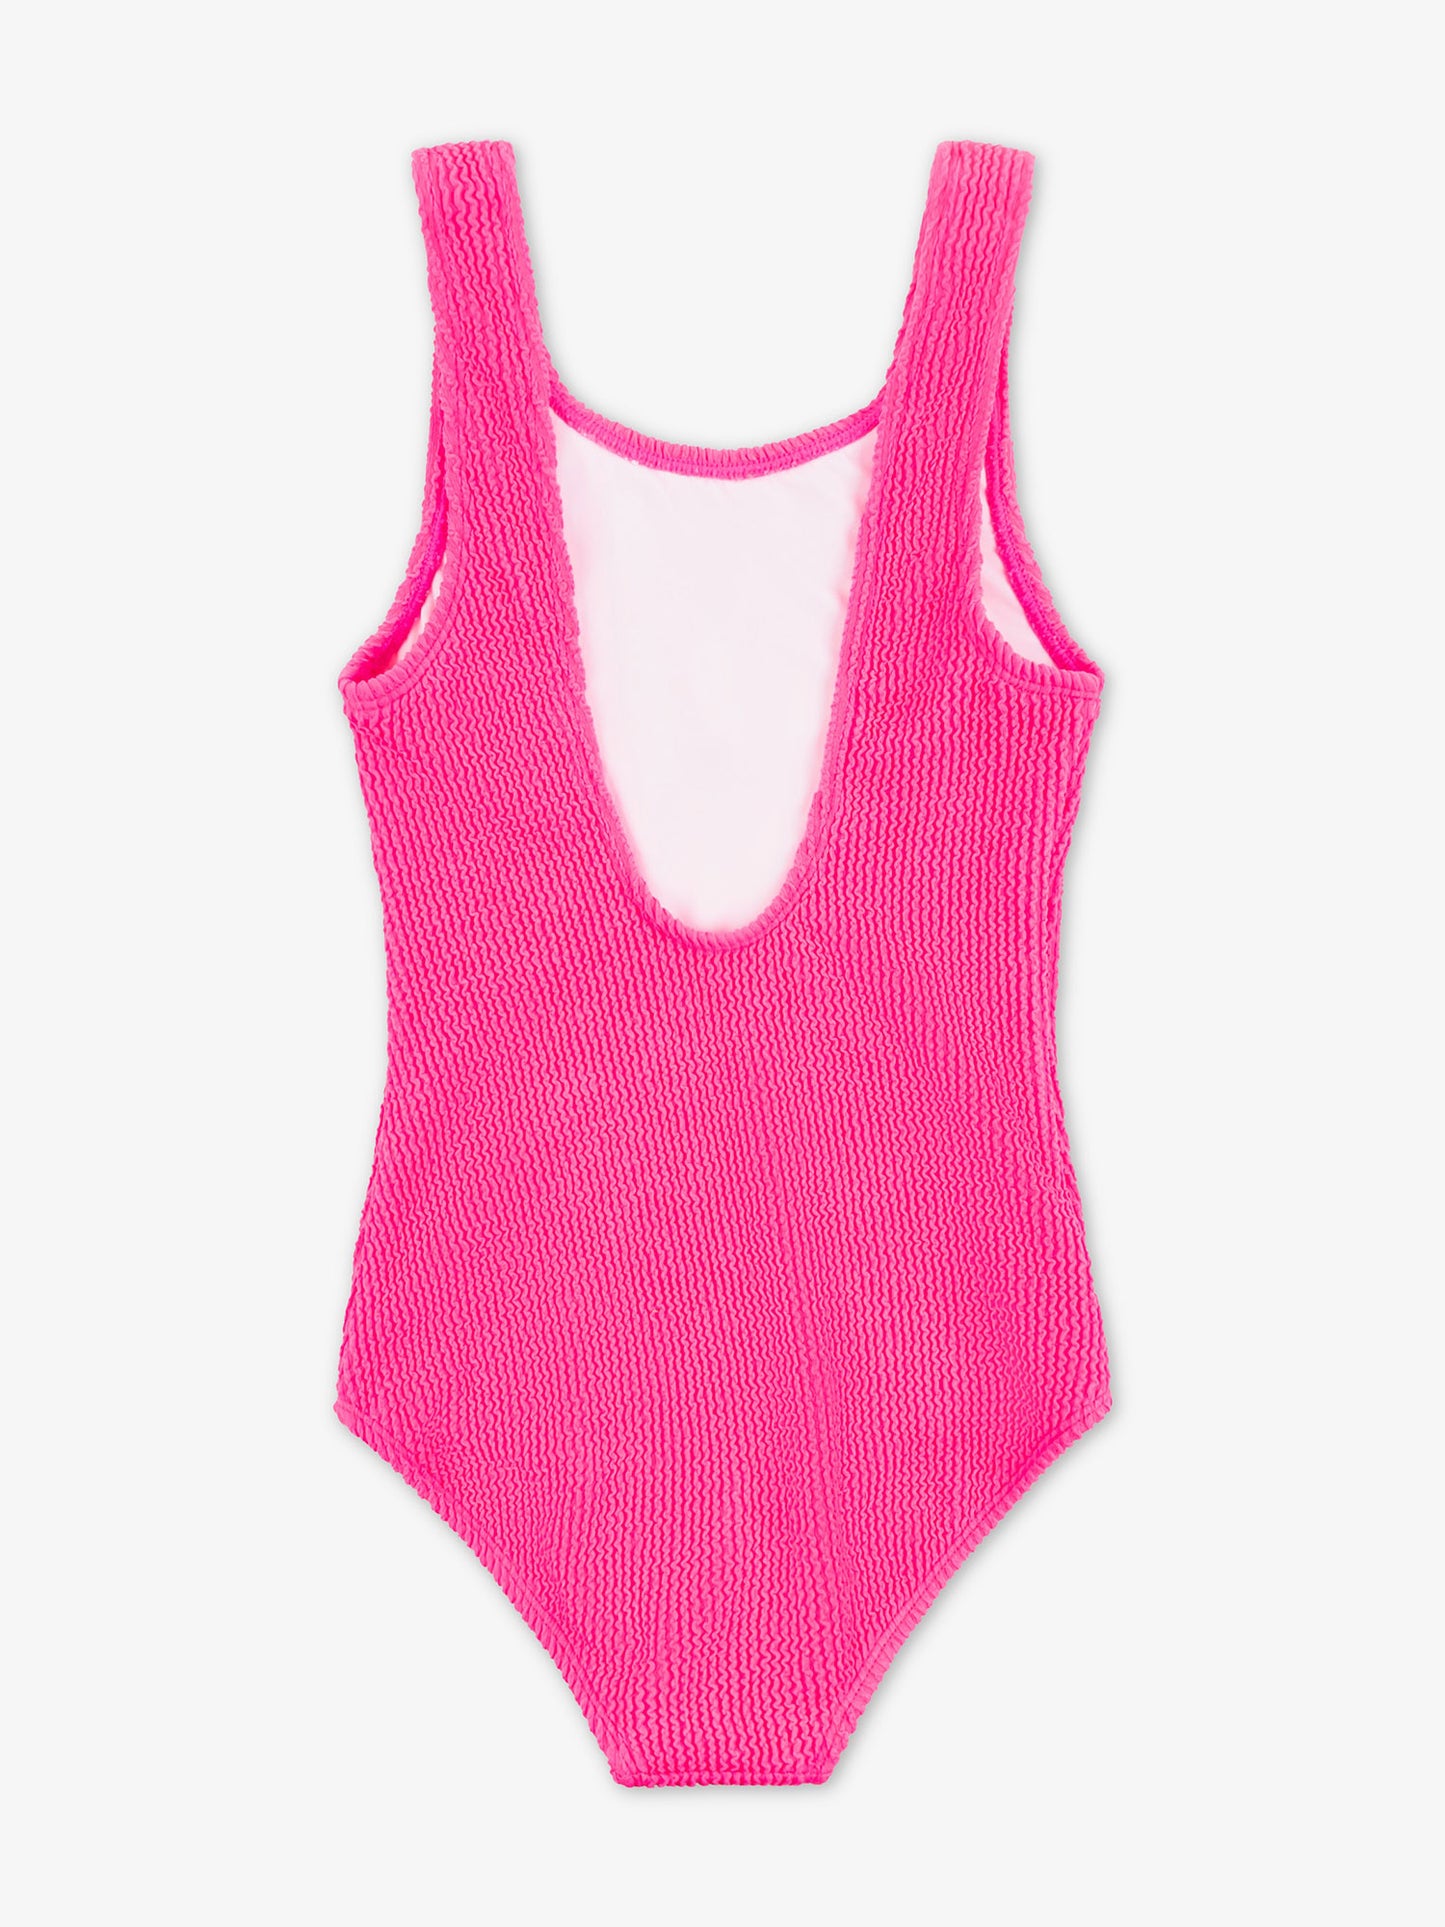 Square Neck swimsuit - online shop Bebe Concept